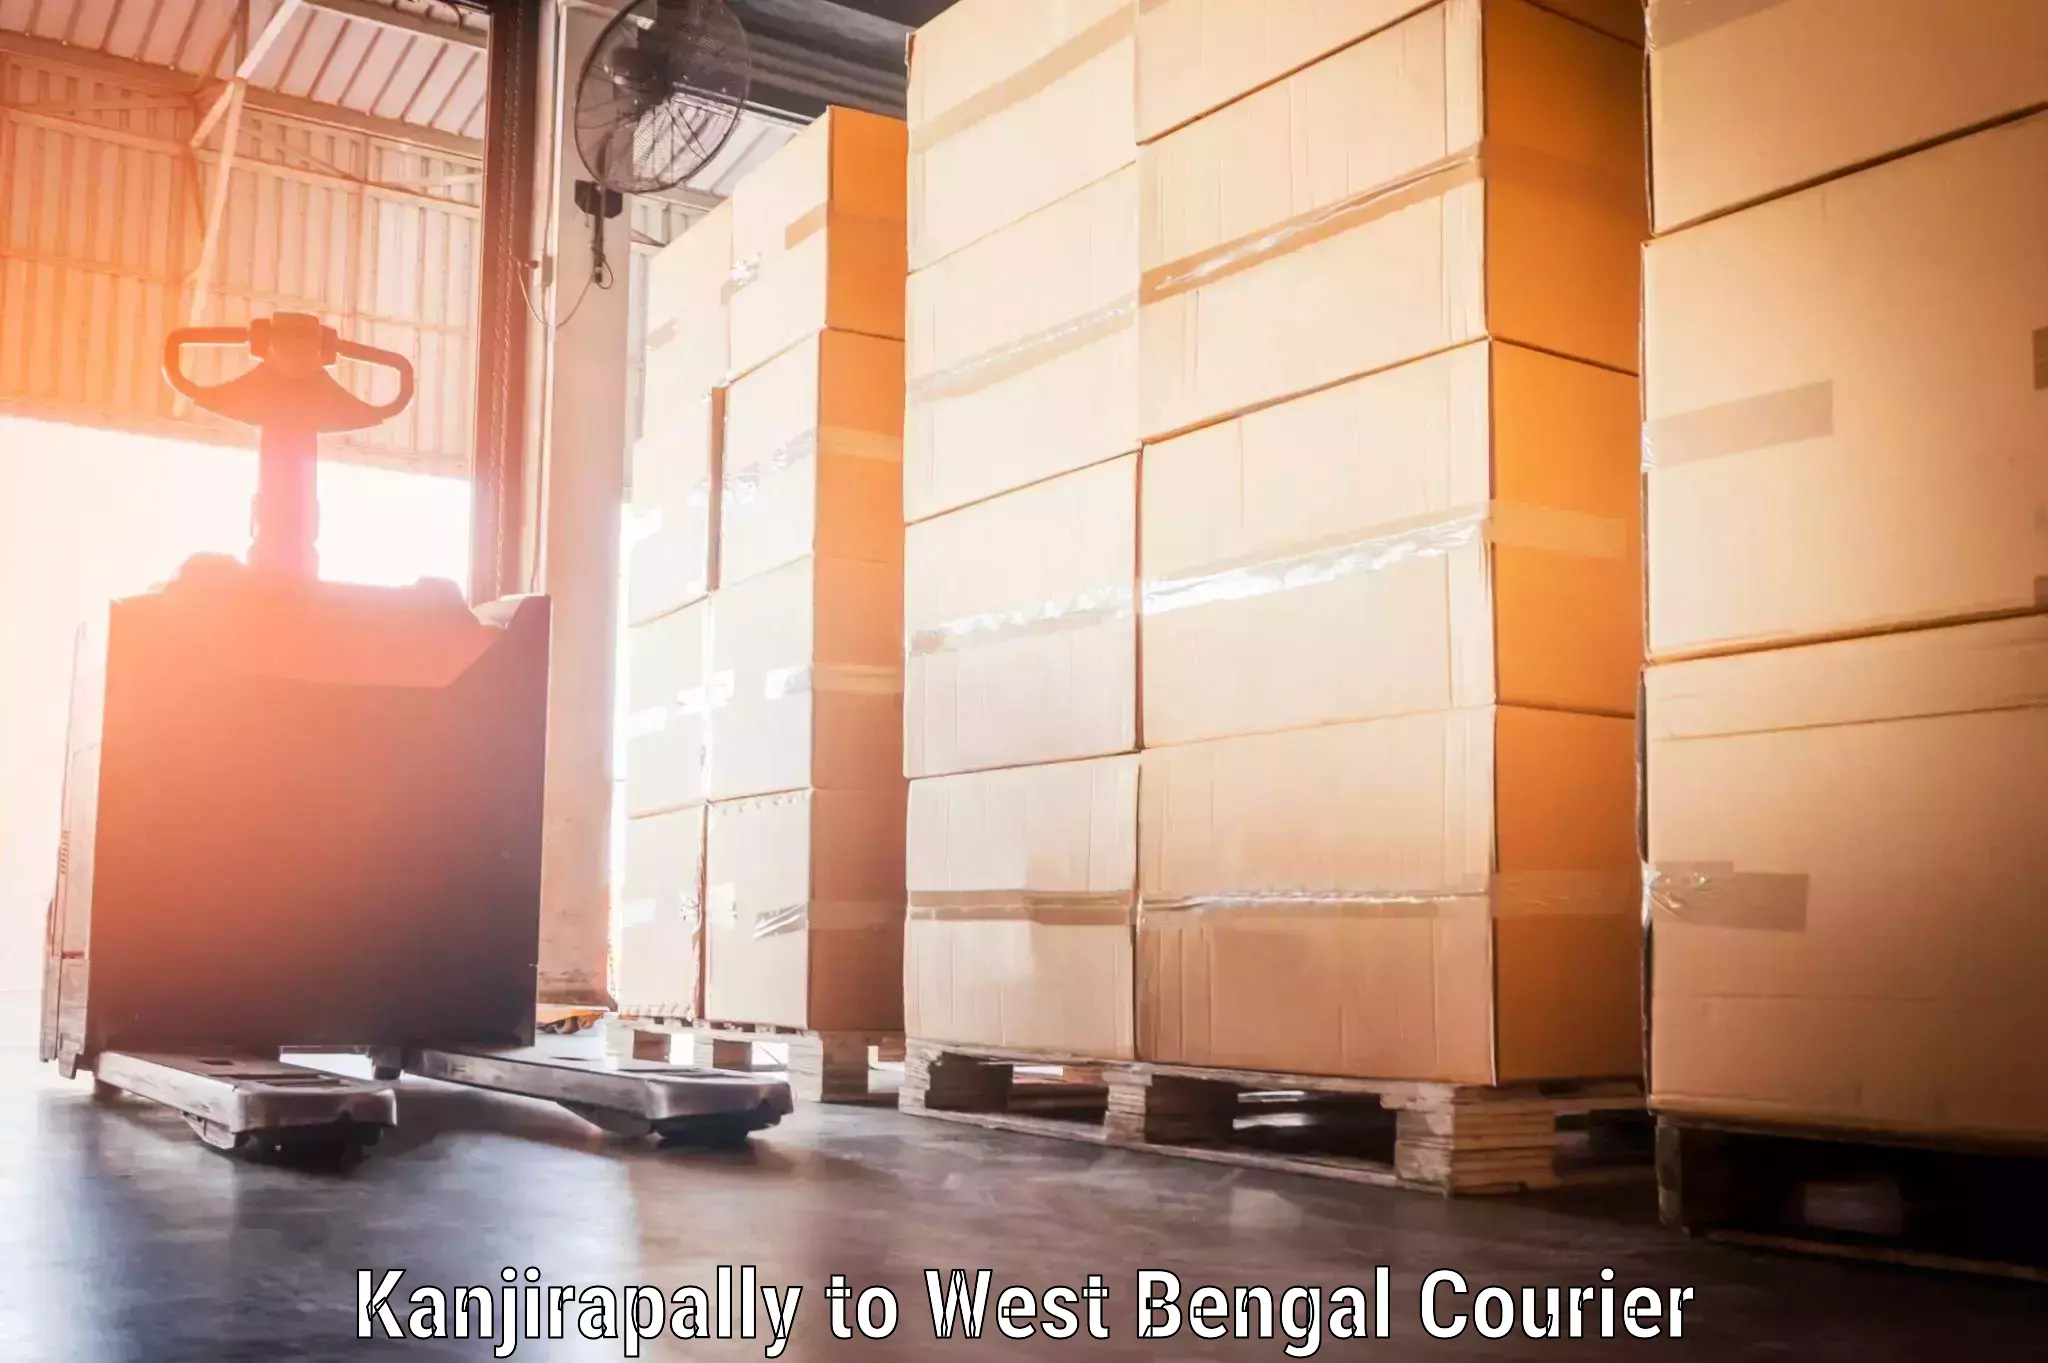 Baggage shipping service Kanjirapally to Maheshtala